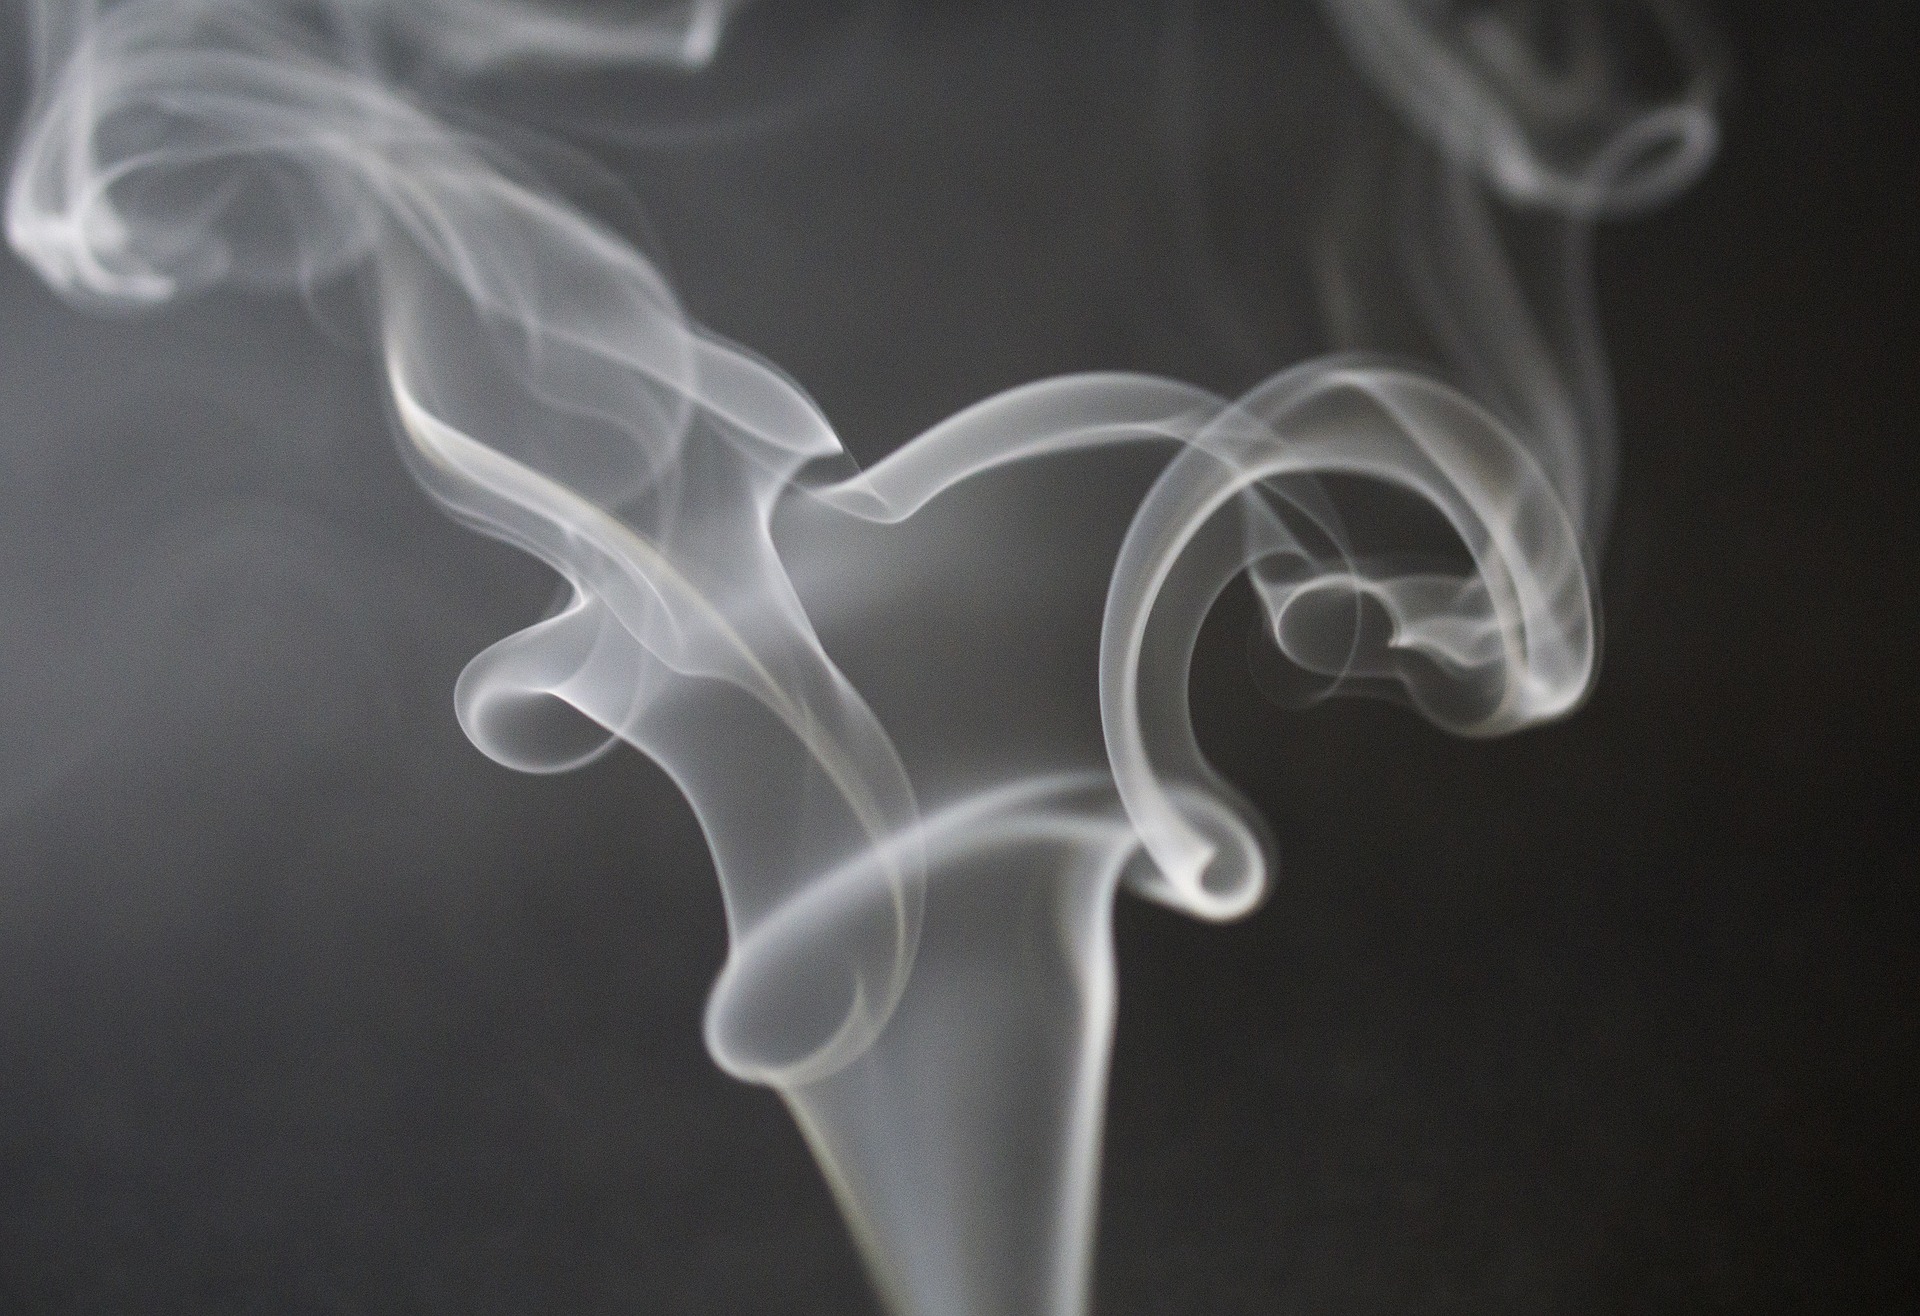 5 изпитани хитрини които работят
Цигареният дим прониква навсякъде и миризмата